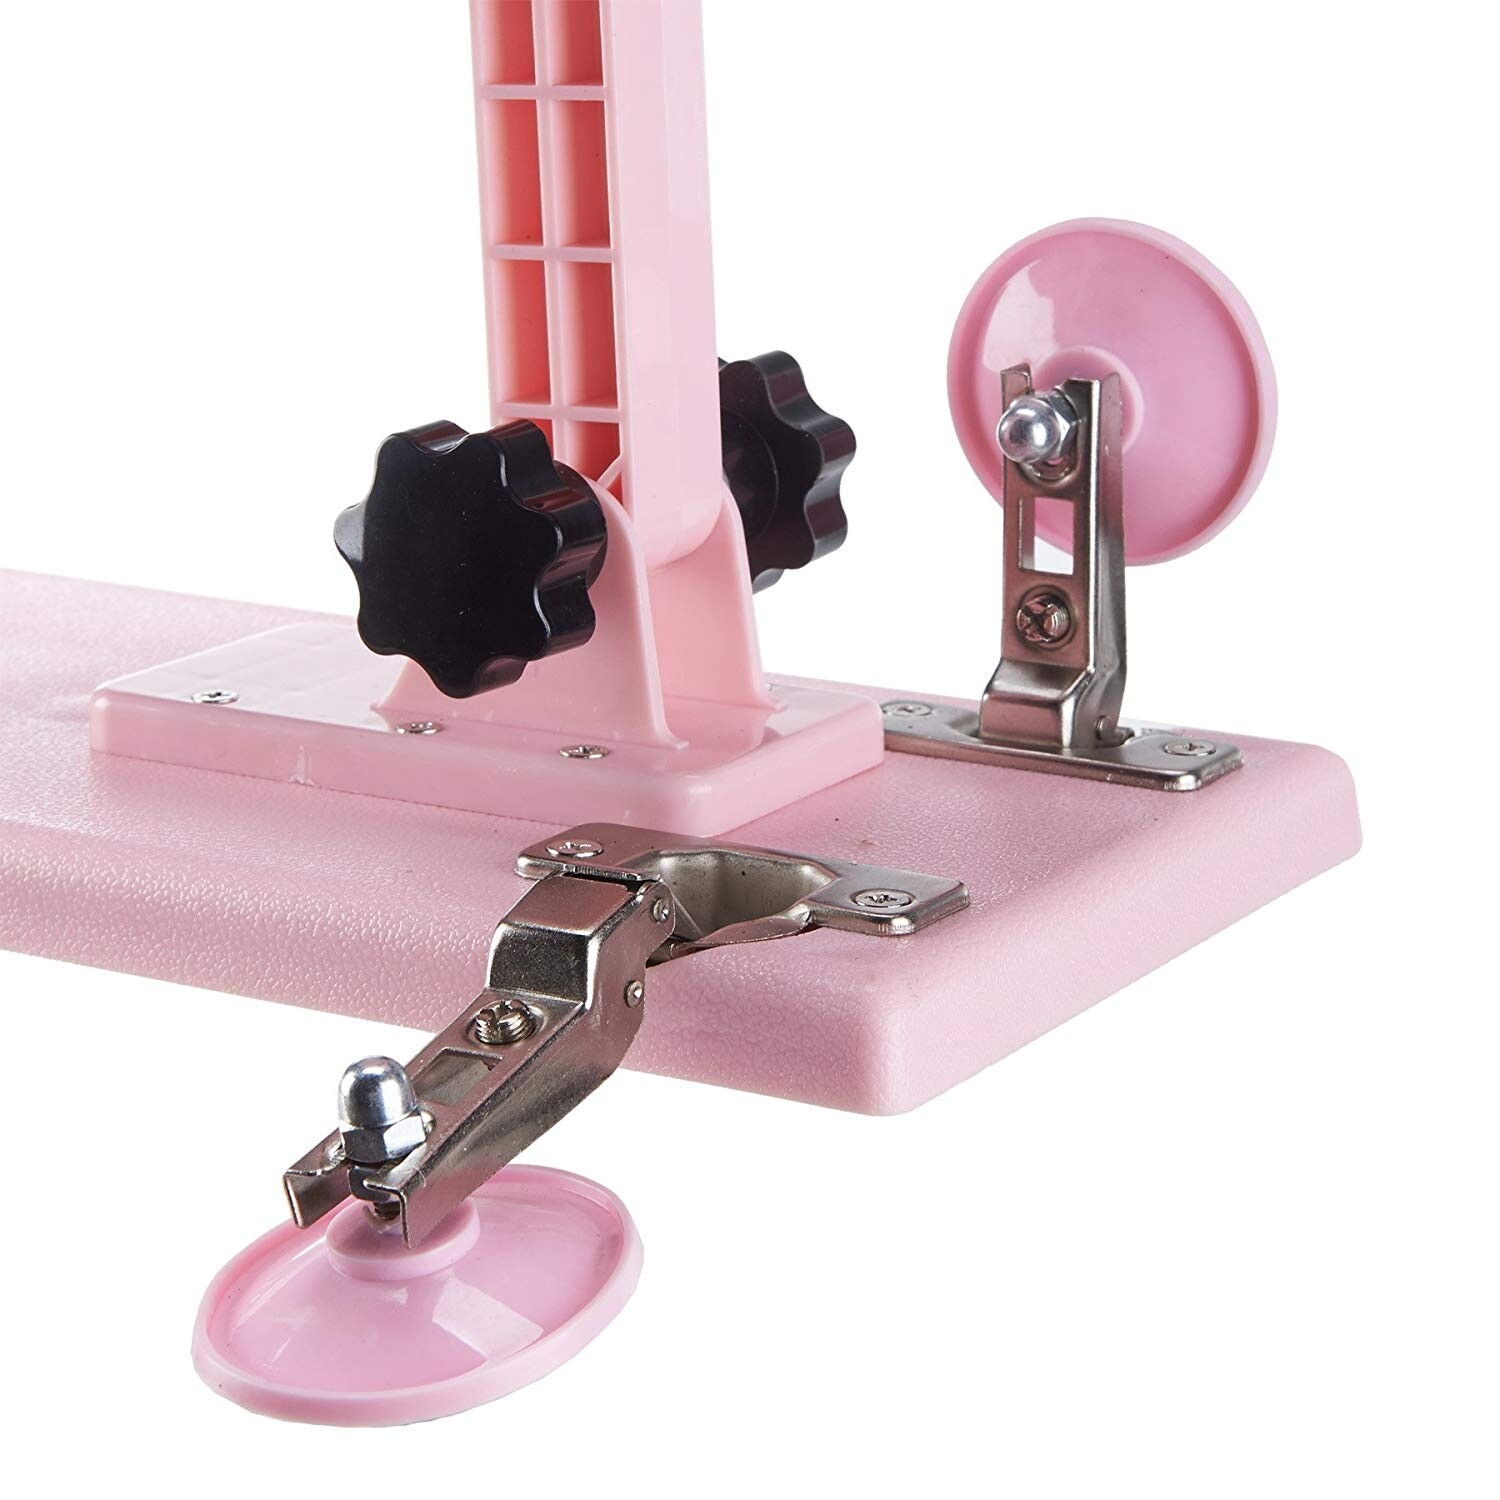 Machine automatique de sexe avec attachements de gode 5PCS pour les femmes rose